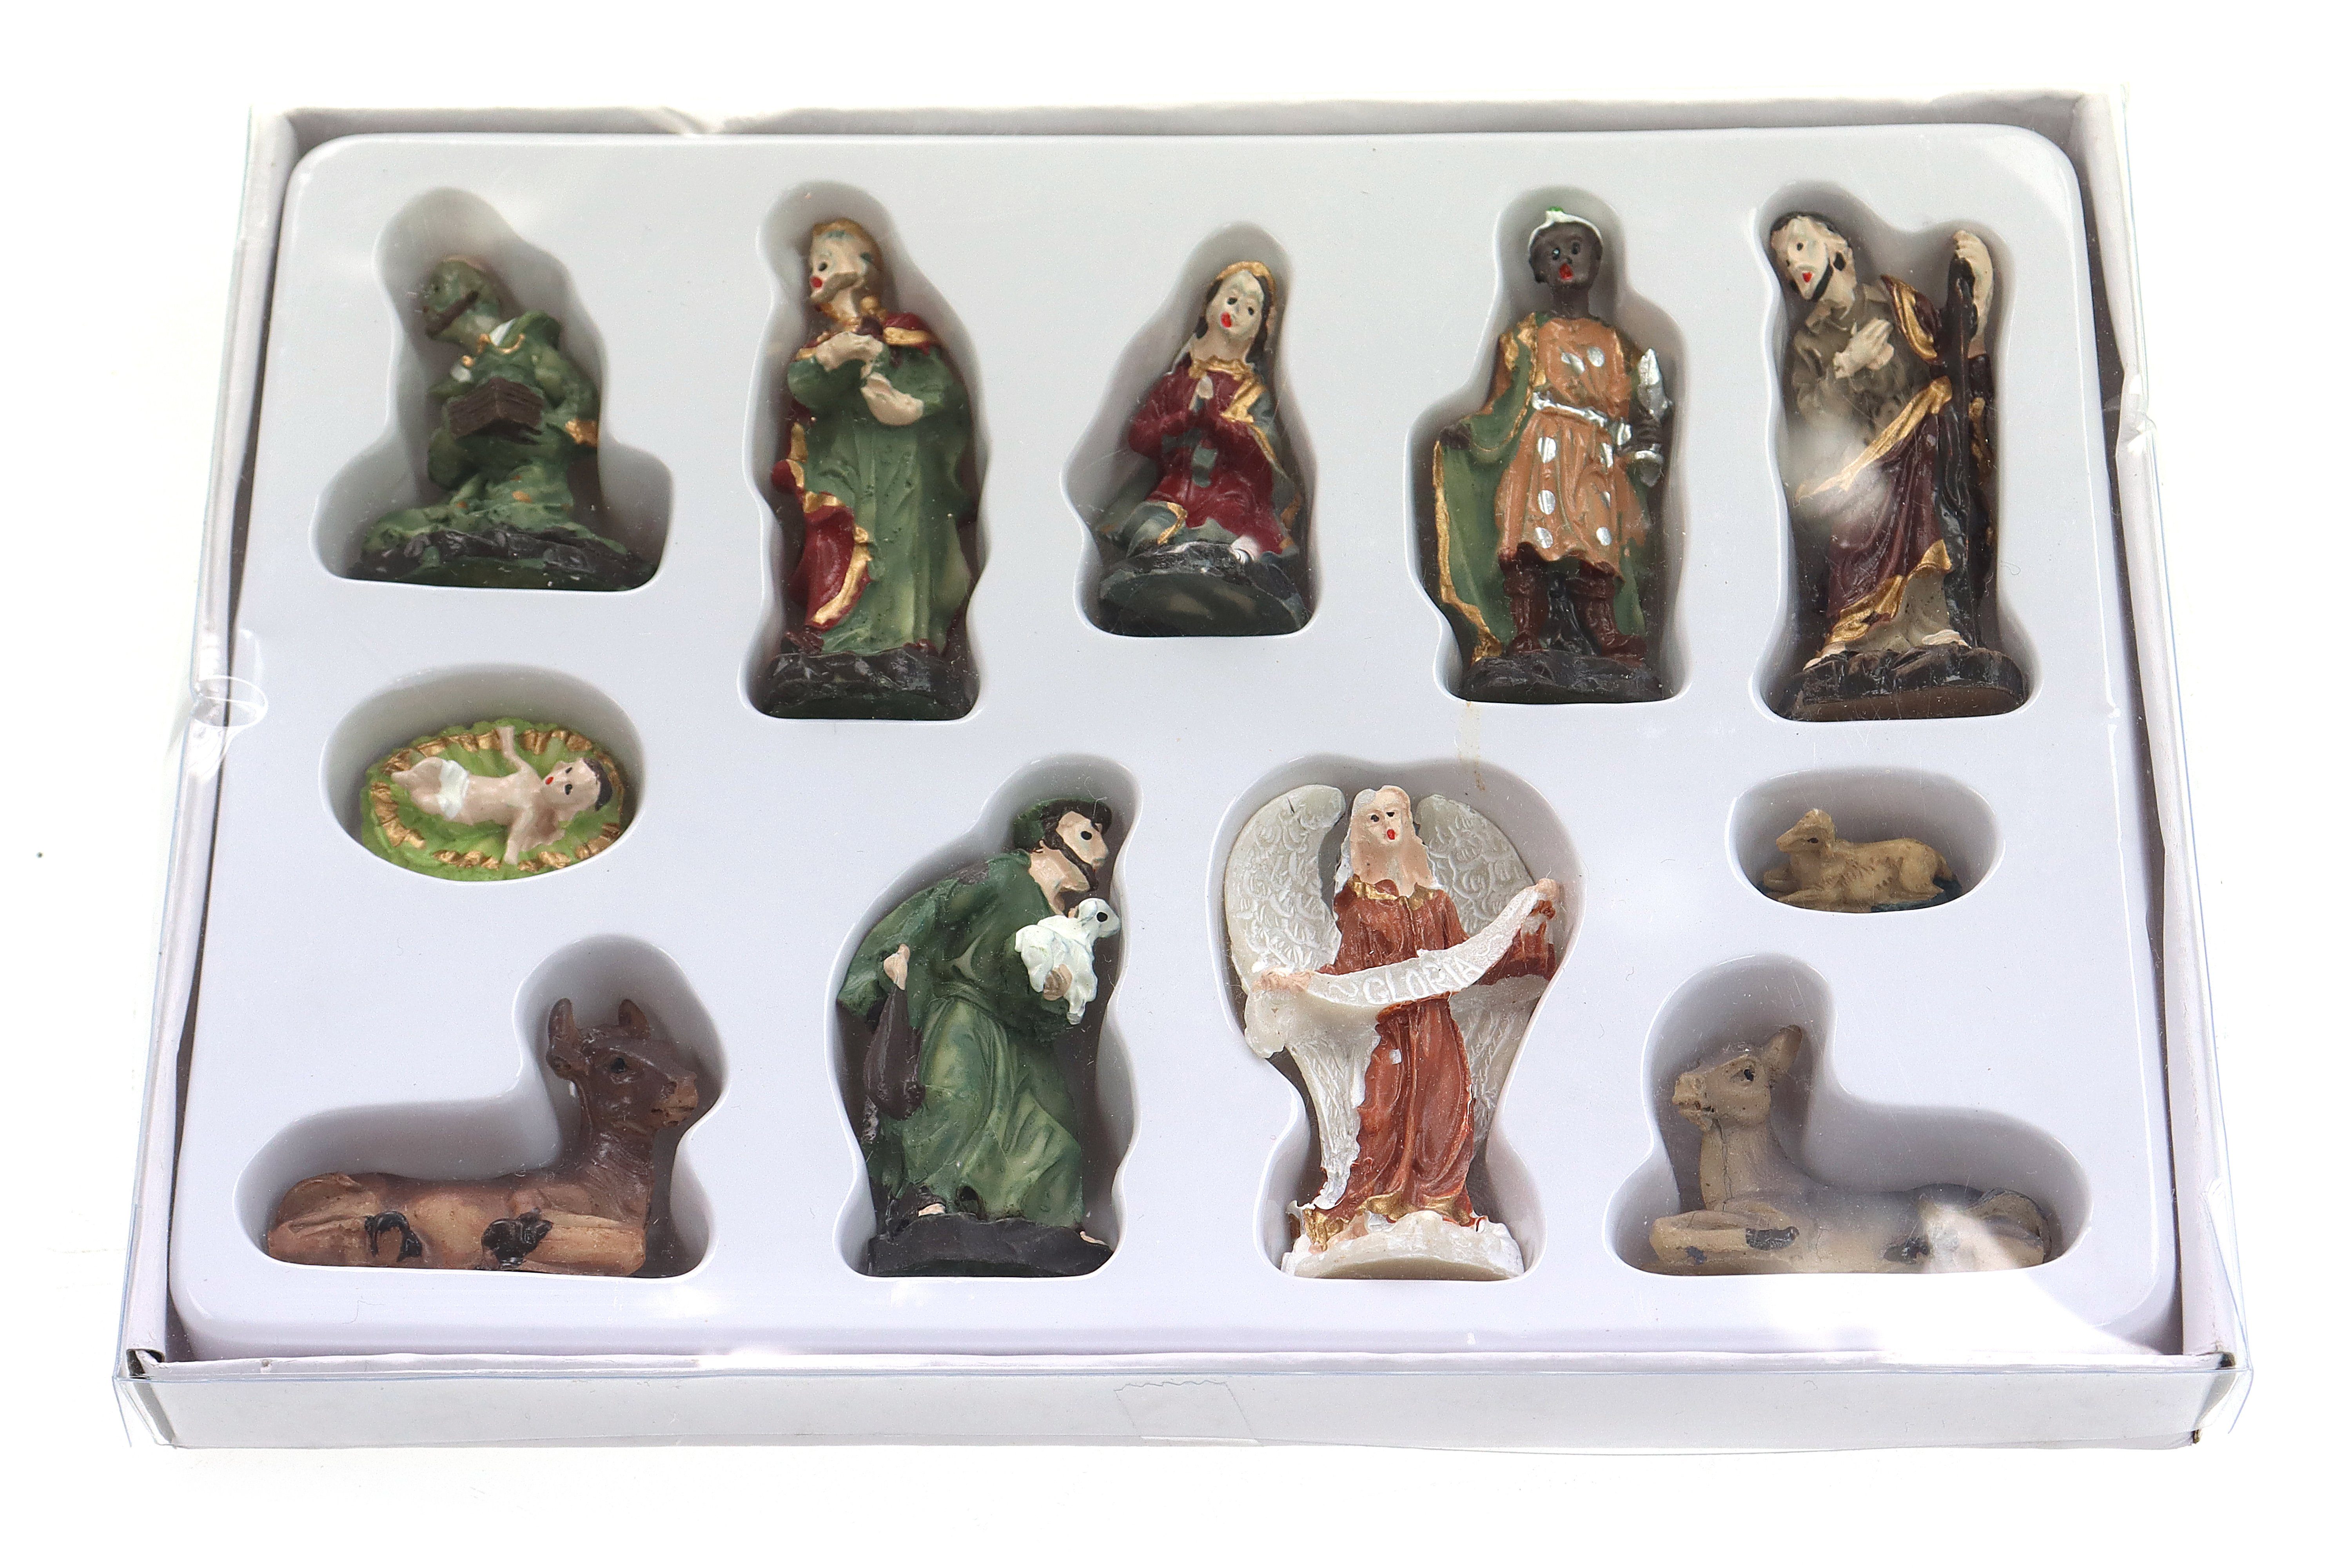 Krippenfigur Weihnachtskrippenfiguren H.:4,5cm 11-teilig Set (11 St) Krippenfiguren Mini Plastikbox ELLUG in